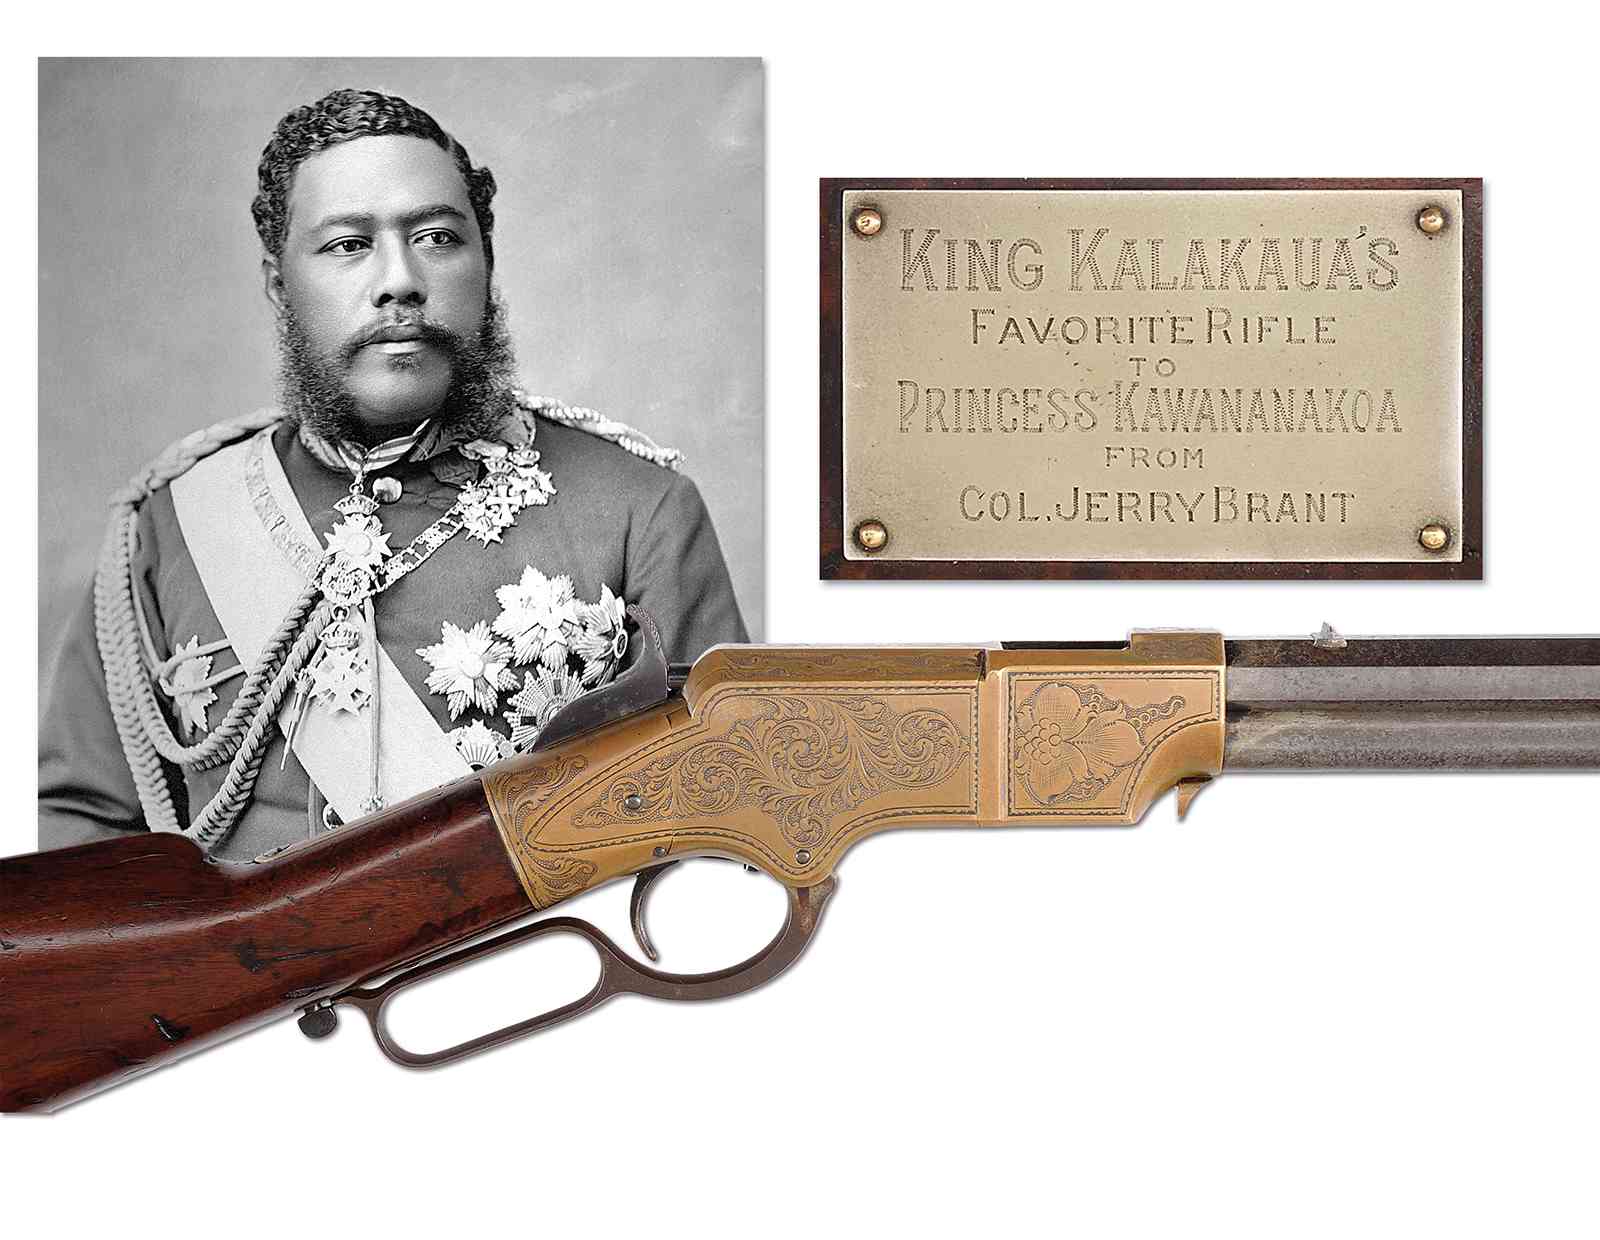 A rare engraved Henry to American Civil War General, Edward McCook, later presented to King Kalakaua of Hawaii and then to Princess Kawananakoa.